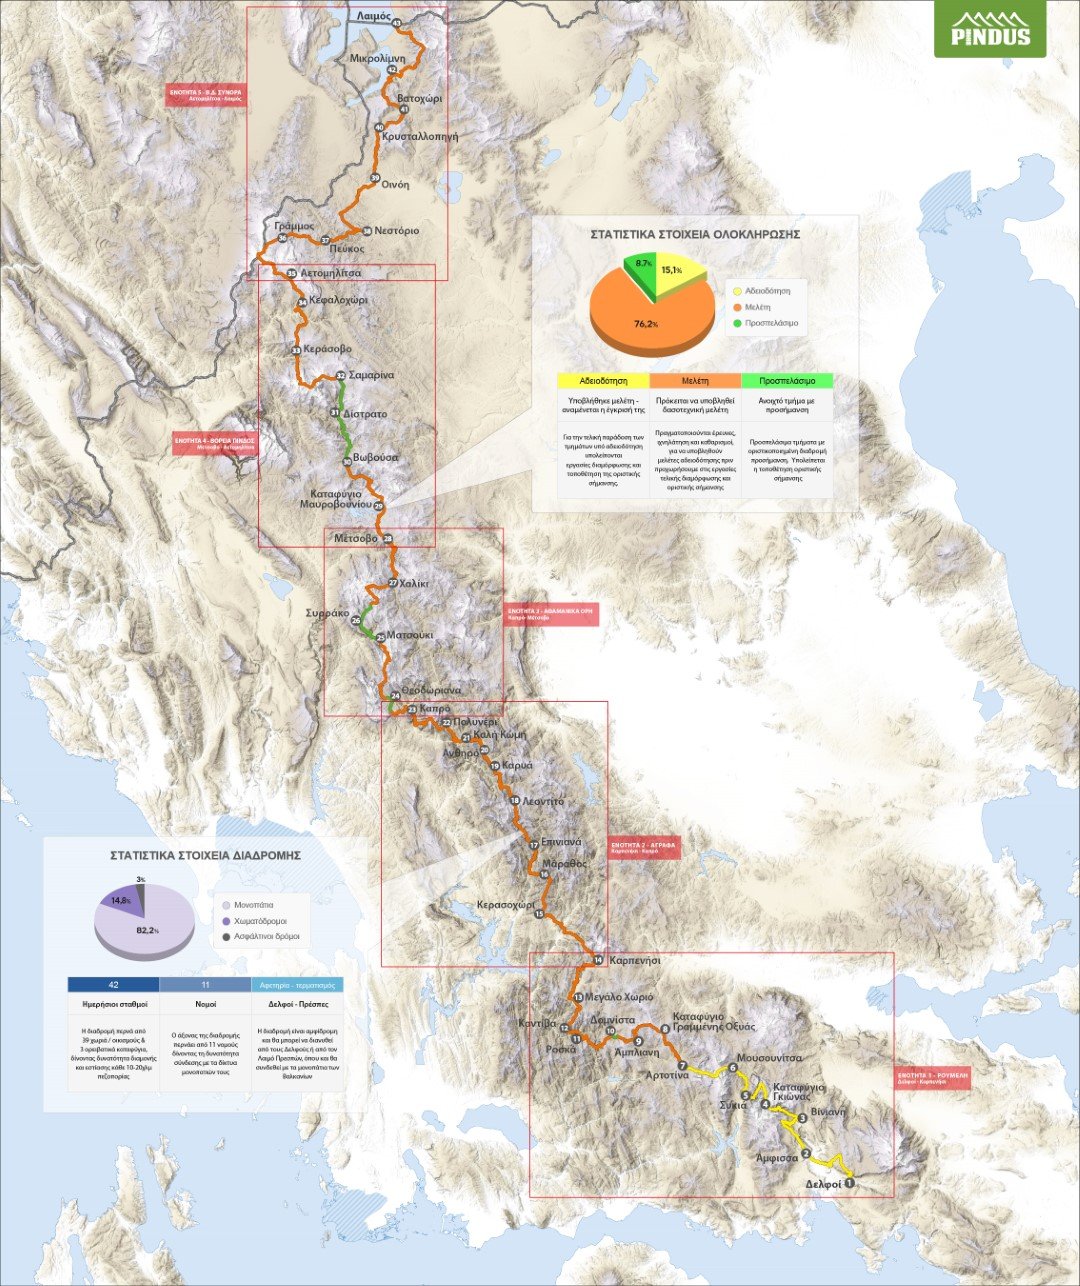 Μονοπάτι της Πίνδου / "Pindus Trail" 2018-2020